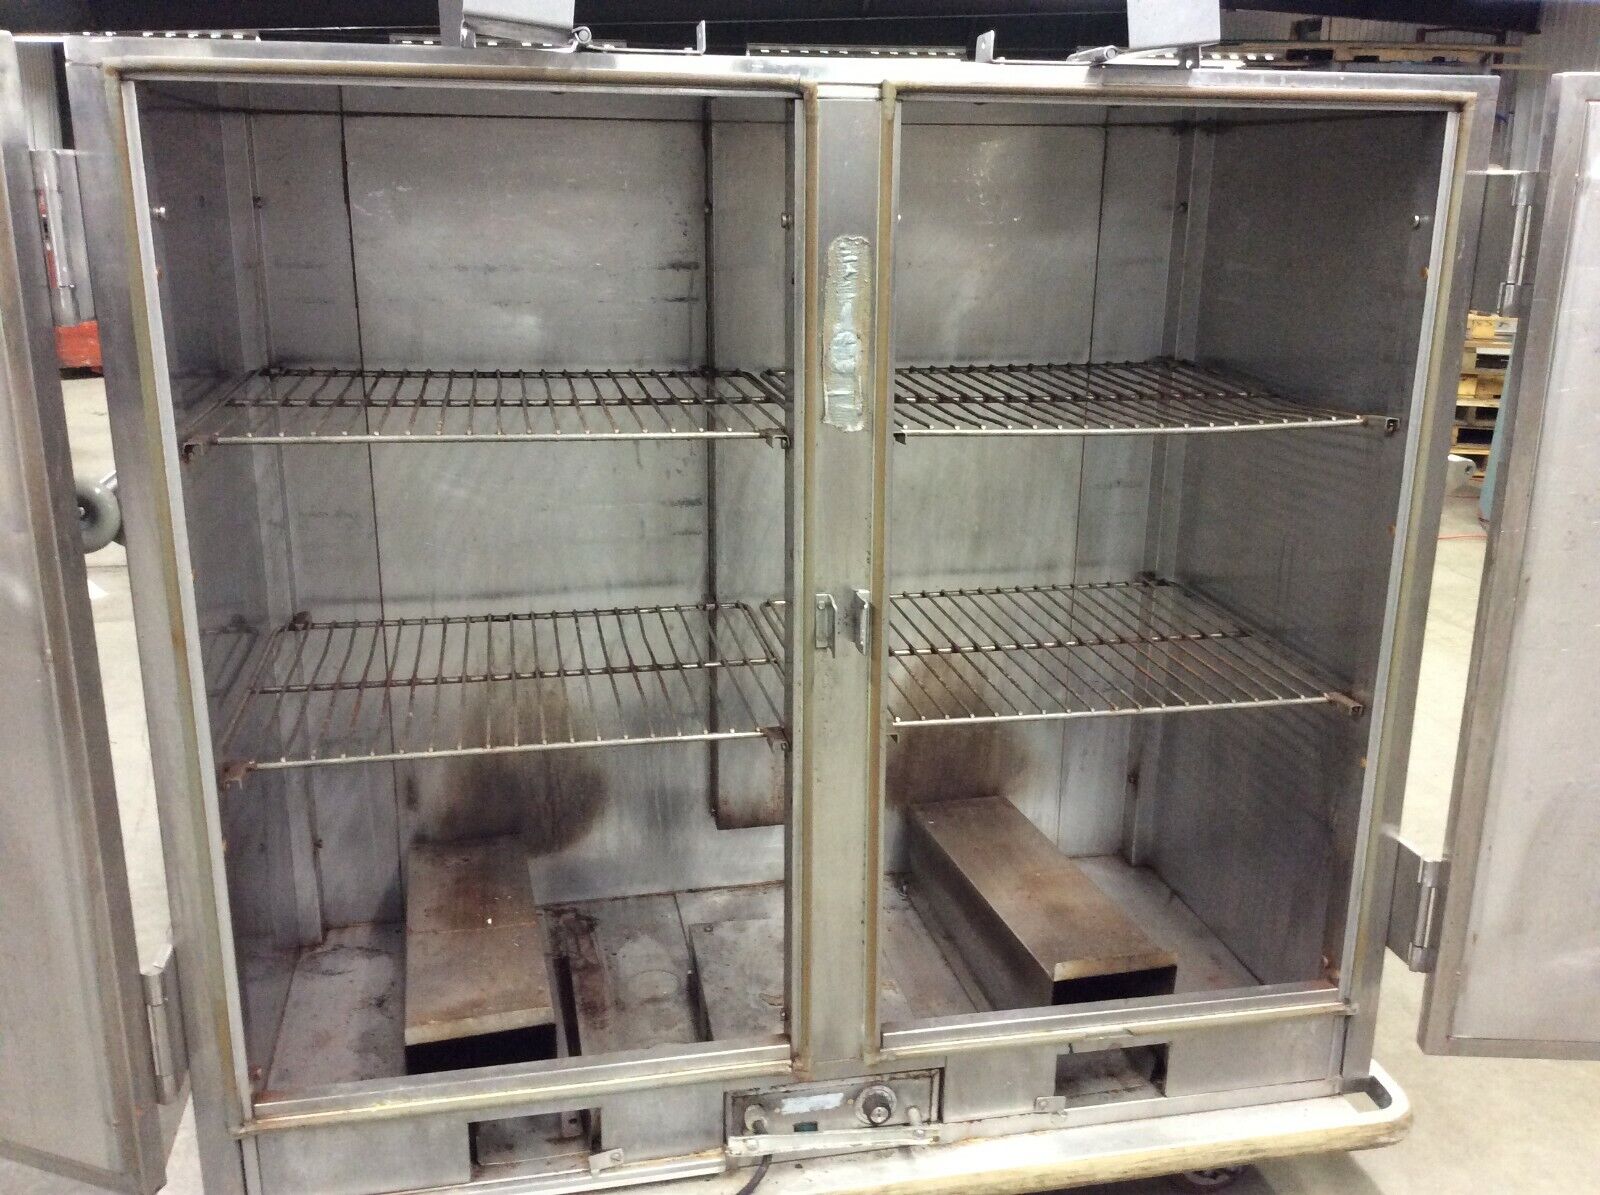 Carter Hoffmann BB1000 FH90 Warming Heated Banquet Cart Cabinet